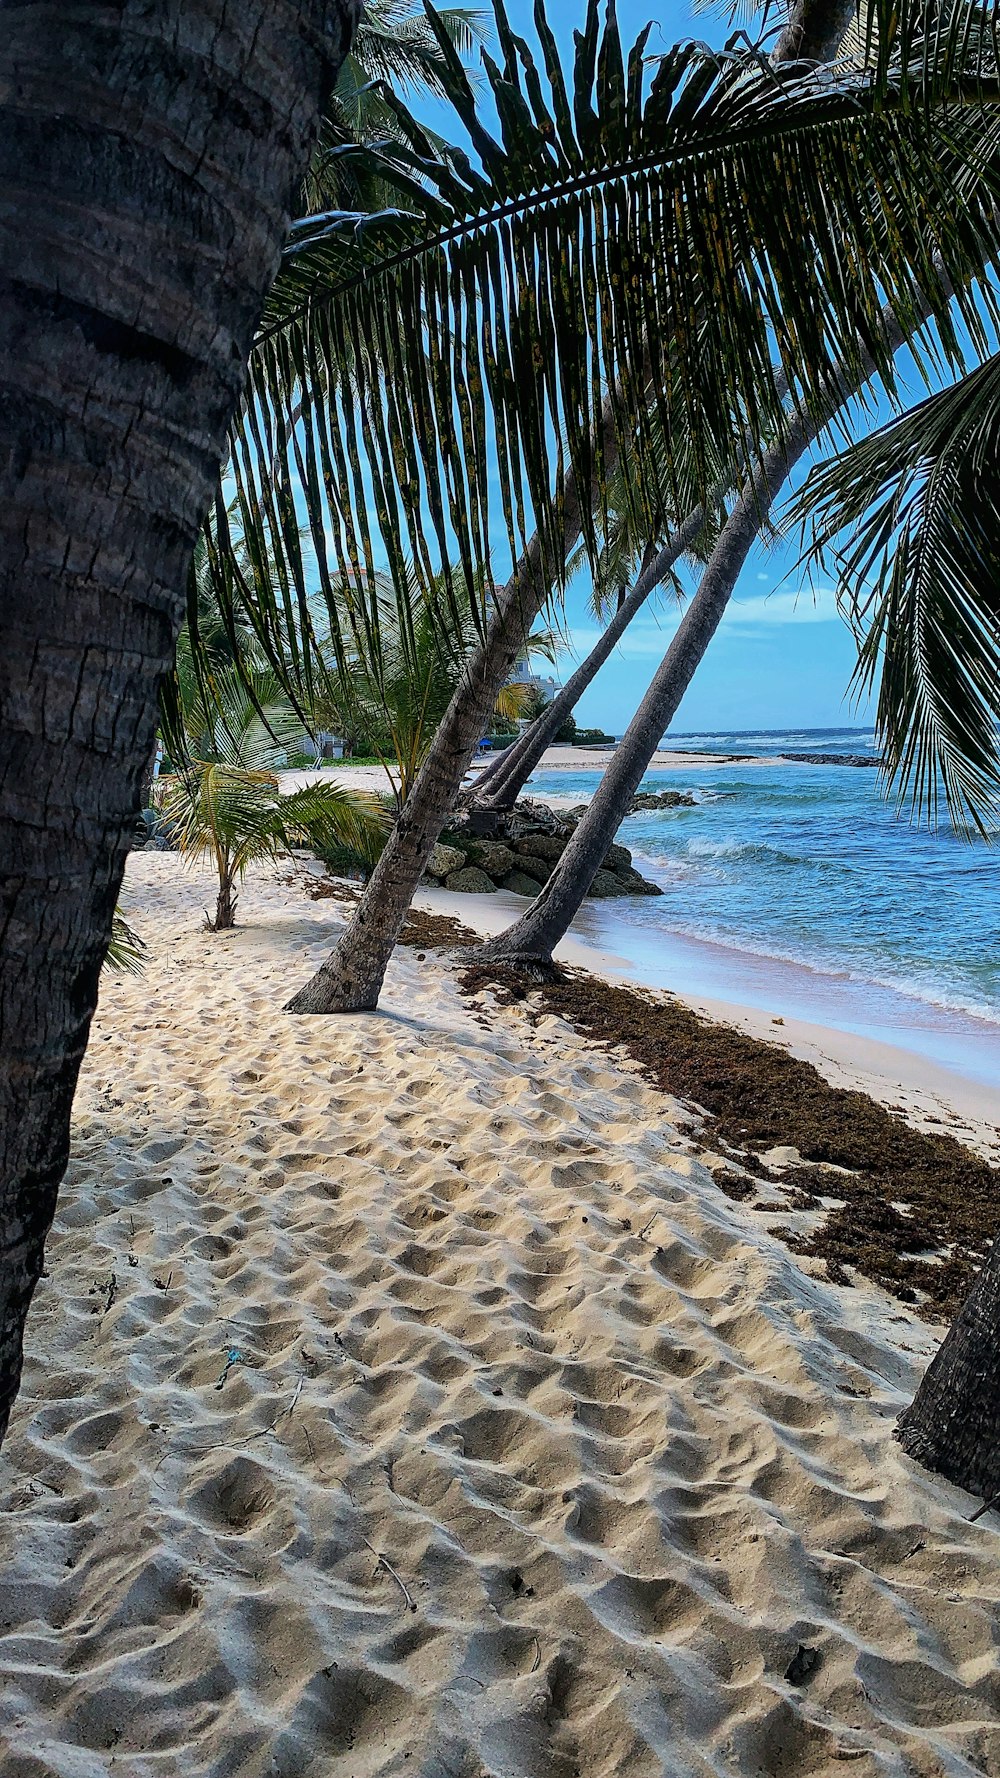 palmiers sur la plage